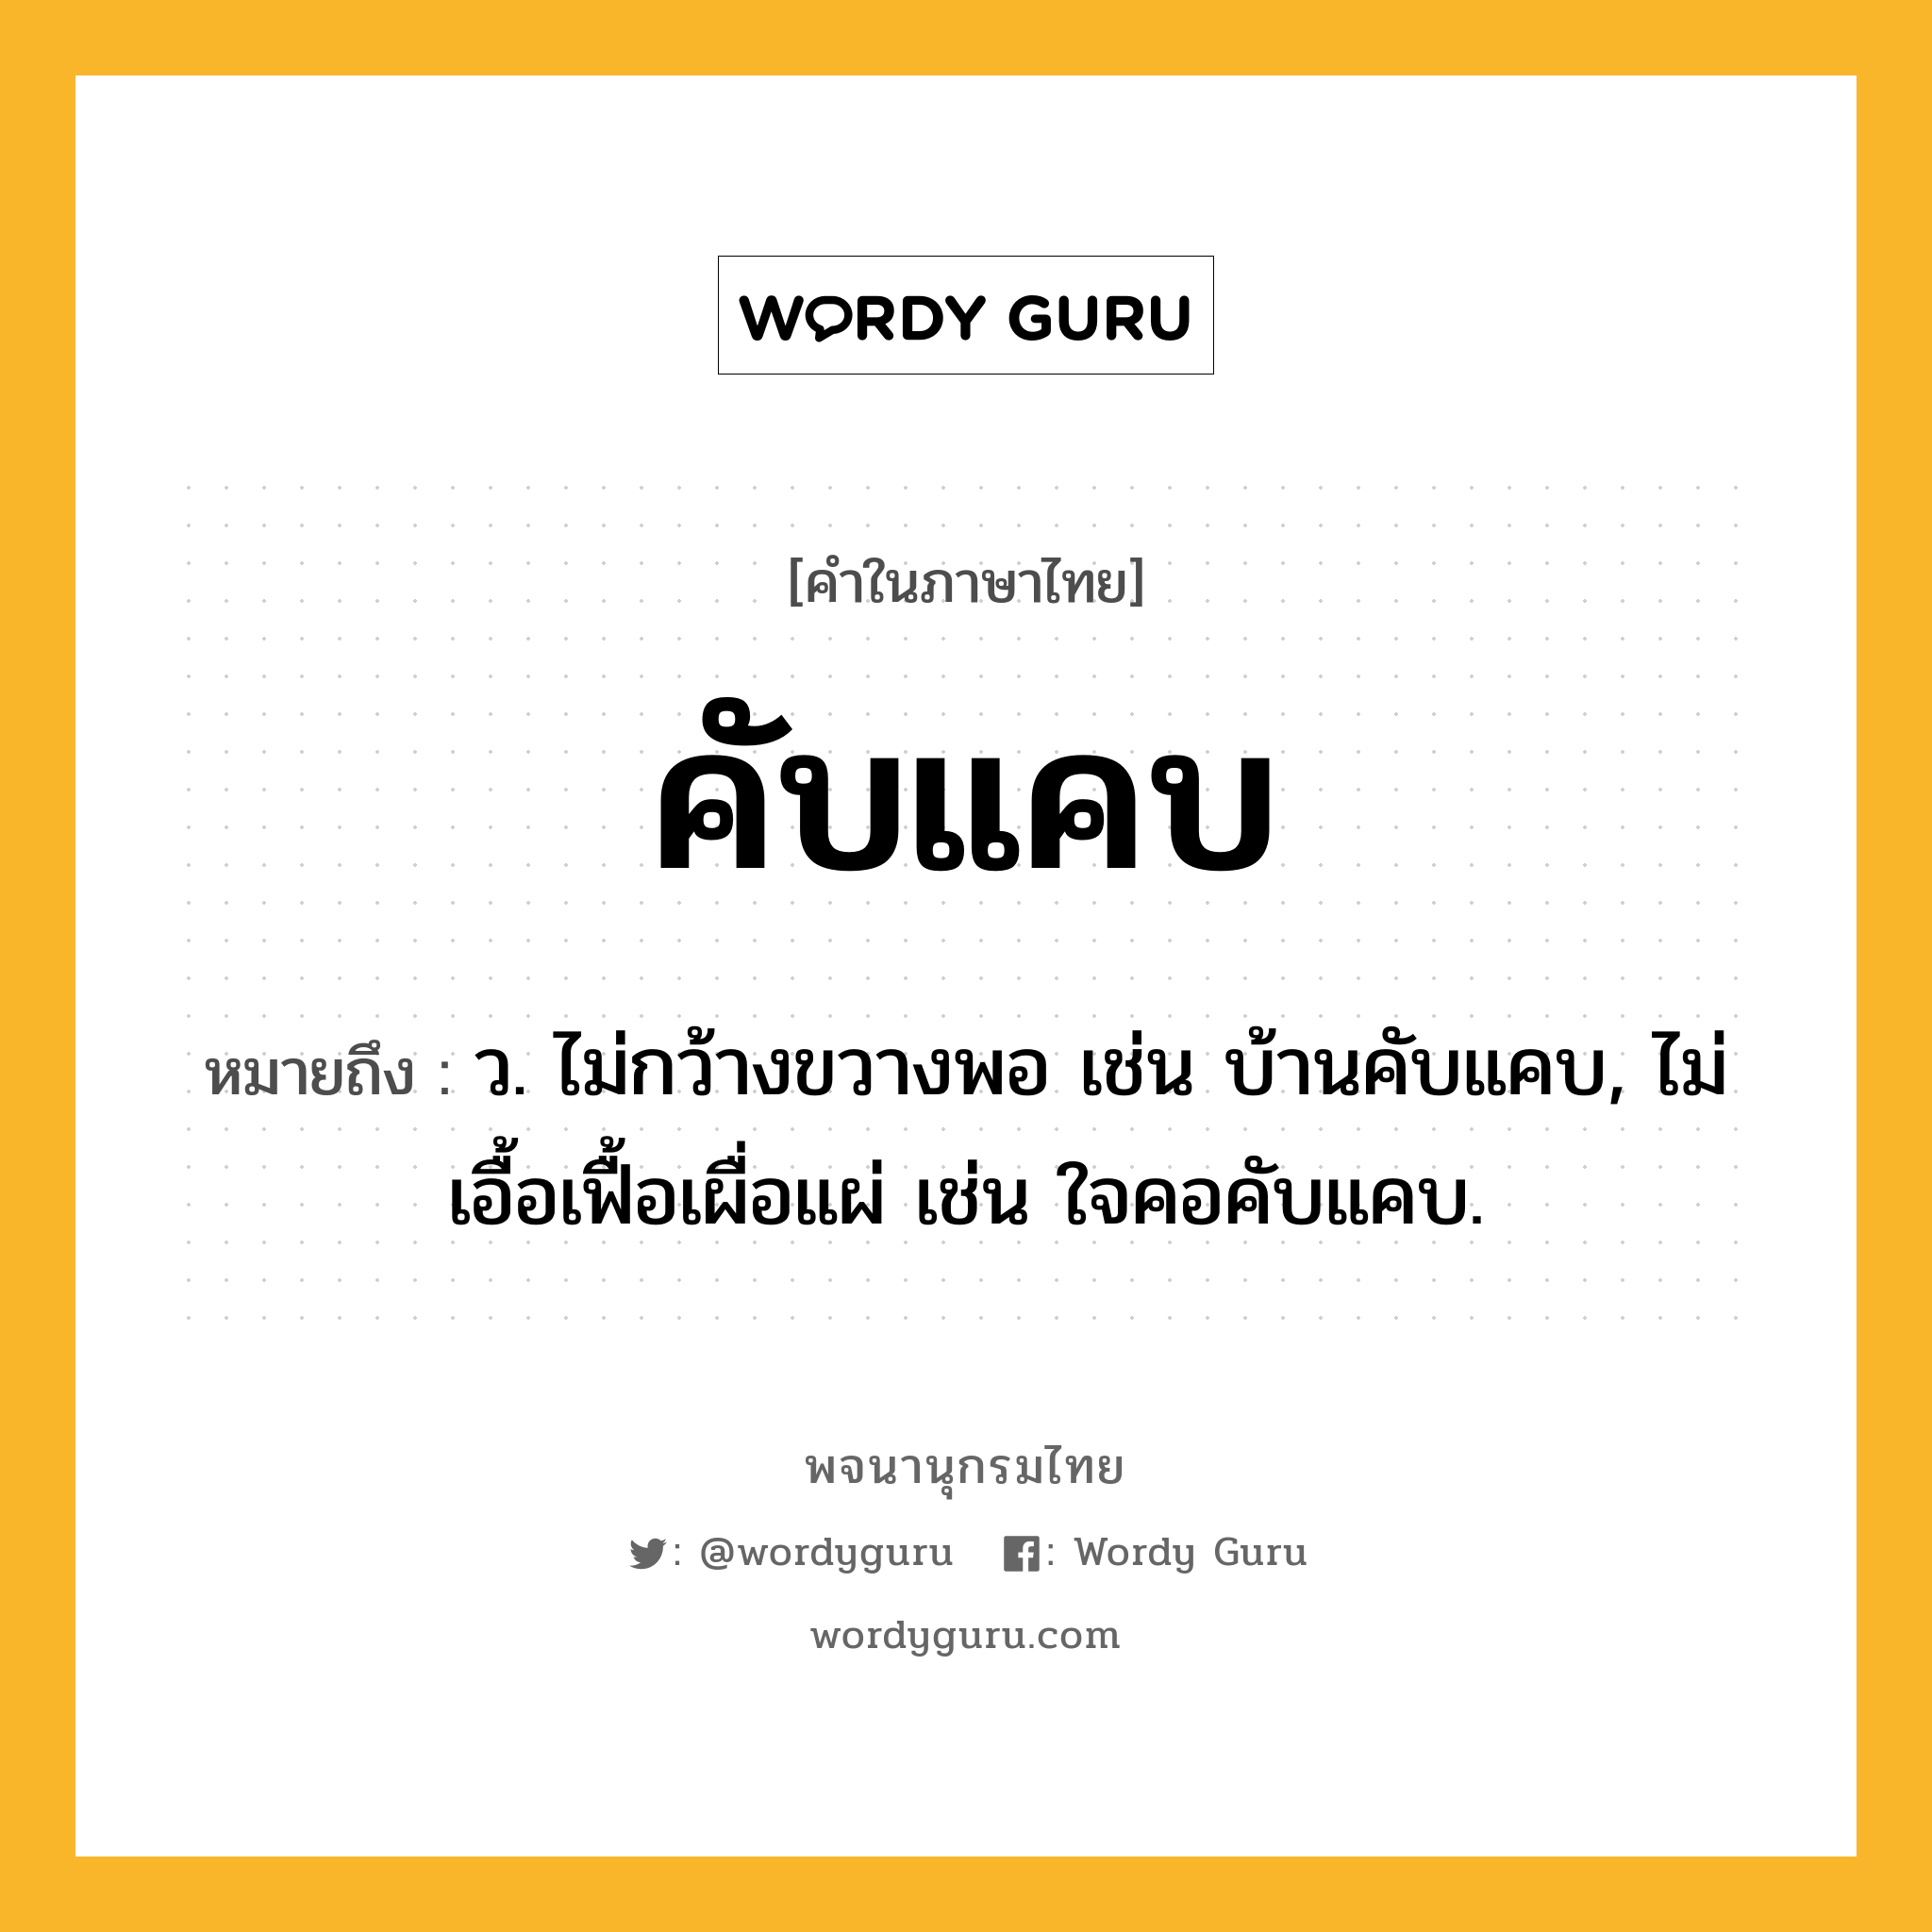 คับแคบ หมายถึงอะไร?, คำในภาษาไทย คับแคบ หมายถึง ว. ไม่กว้างขวางพอ เช่น บ้านคับแคบ, ไม่เอื้อเฟื้อเผื่อแผ่ เช่น ใจคอคับแคบ.